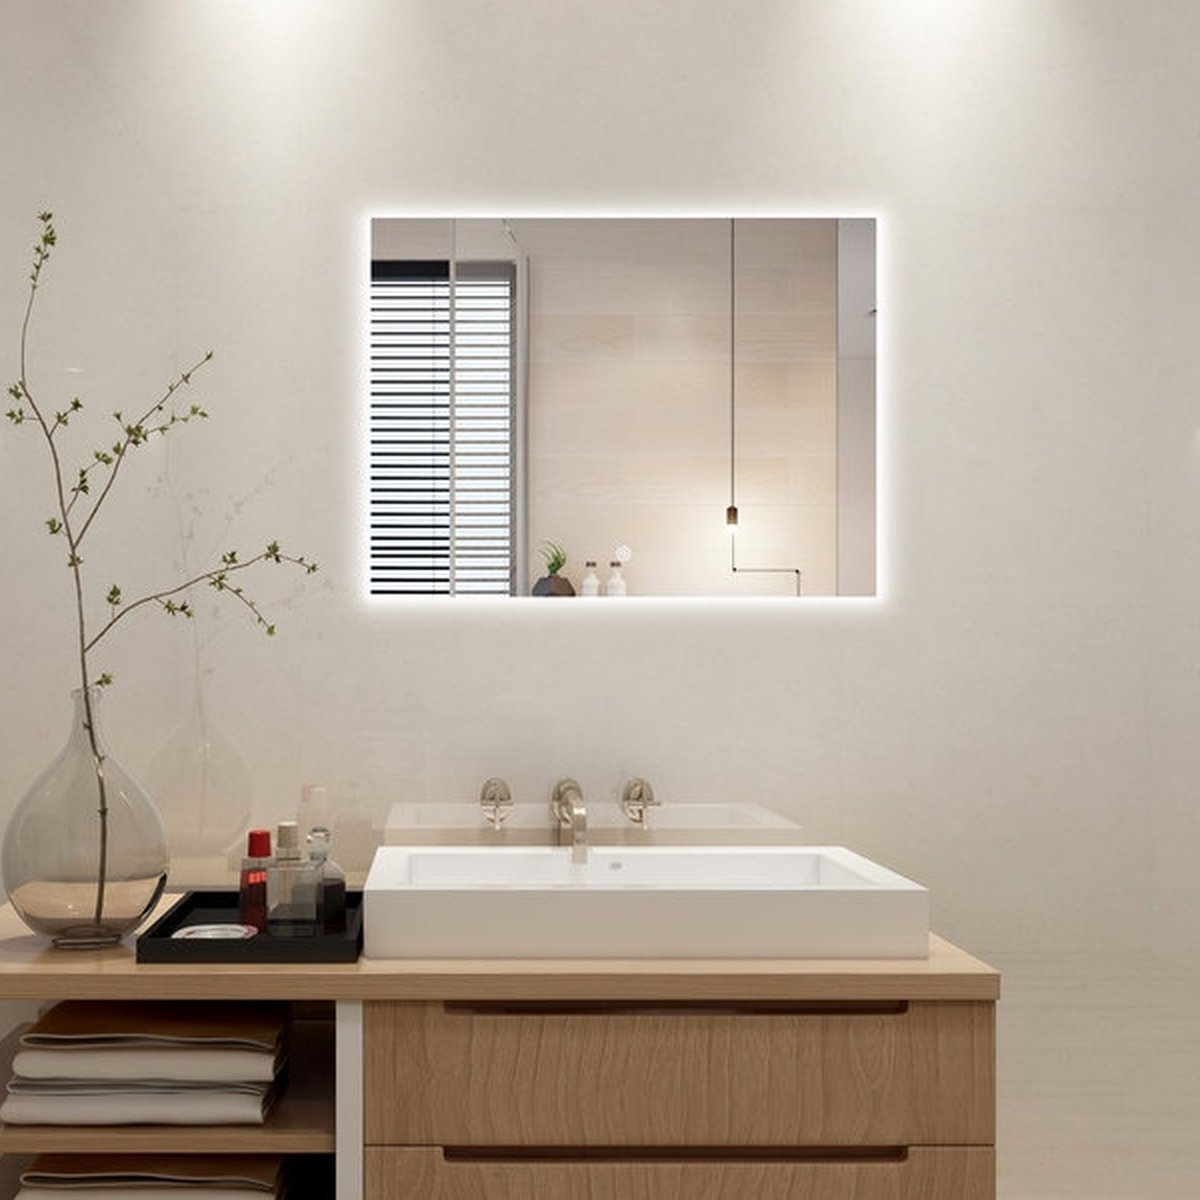 Badkamerspiegel met LED Verlichting - Dimbaar - Anti Condens Verwarming - 3 Licht Standen - 60 x 60 cm